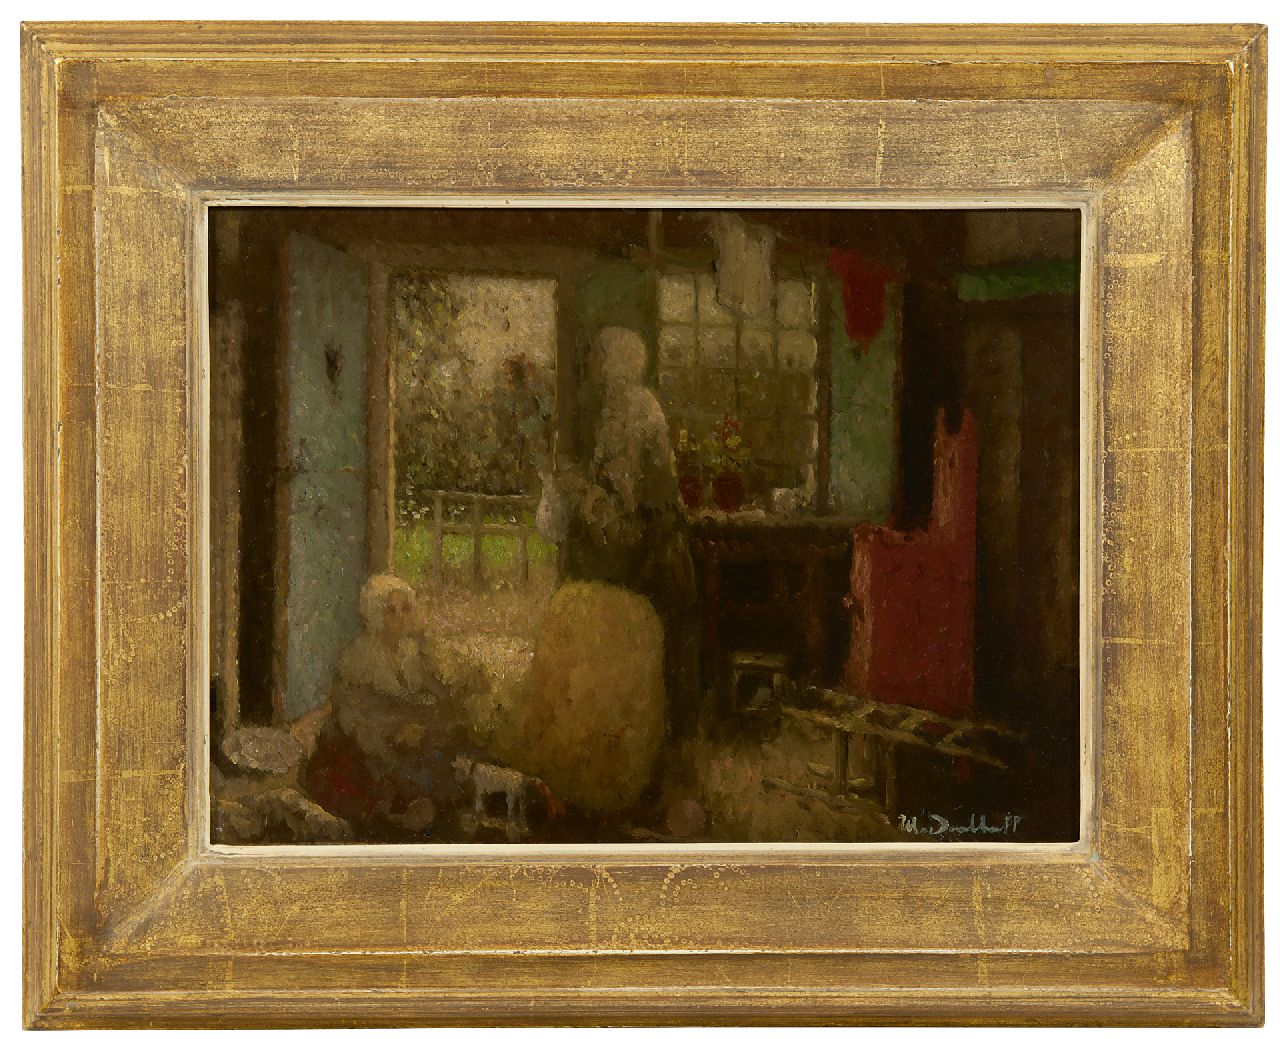 Daalhoff H.A. van | Hermanus Antonius 'Henri' van Daalhoff | Schilderijen te koop aangeboden | Moeder met twee kinderen, olieverf op paneel 26,5 x 36,0 cm, gesigneerd rechtsonder